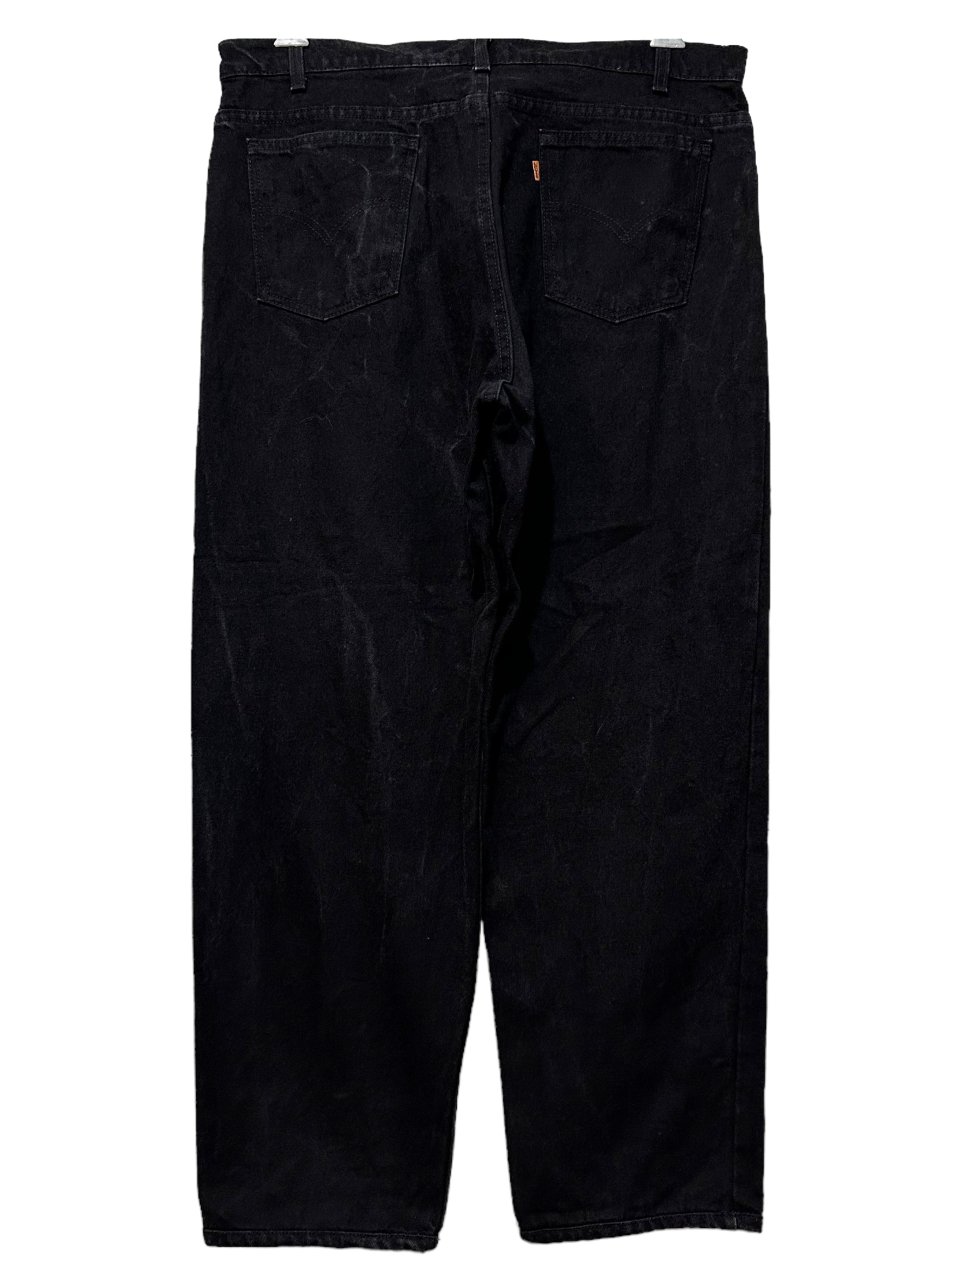 USA製 96年製 Levi's 550 Black Denim Pants 黒 W39×L29 90s リーバイス Levis ブラックデニムパンツ  テーパード 後染め アメリカ製 古着 - NEWJOKE ONLINE STORE